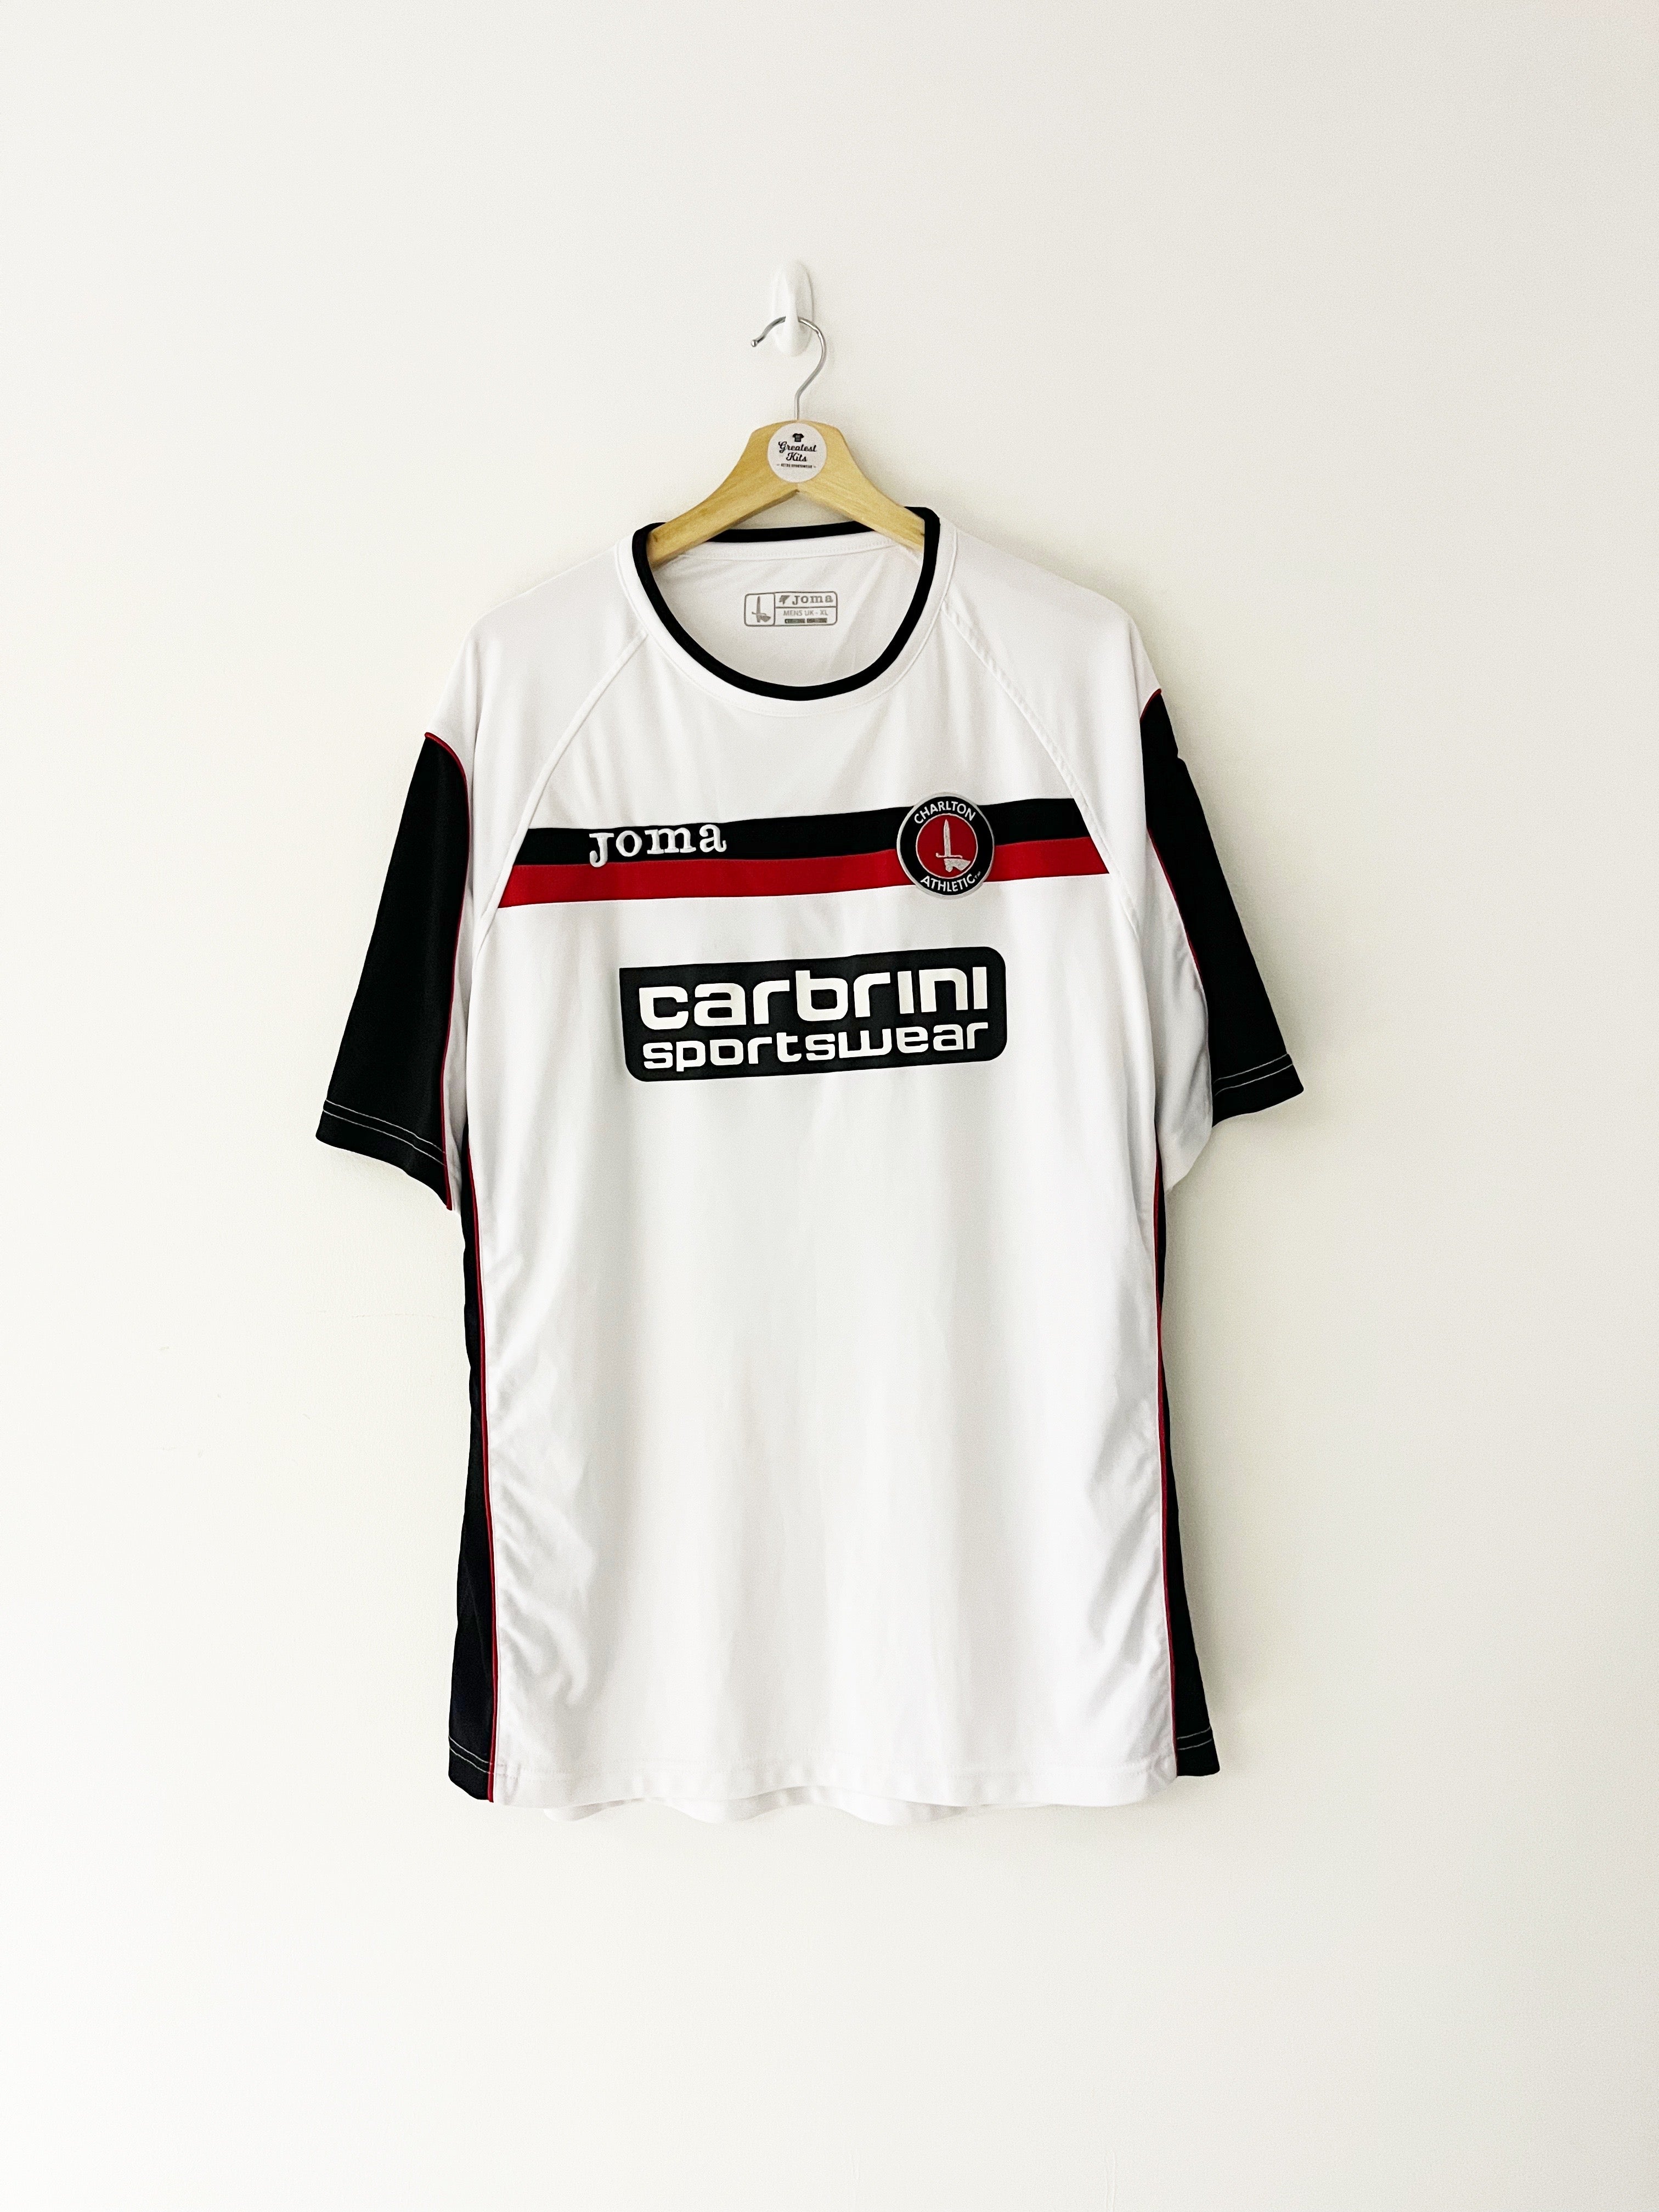 2008/09 Charlton Away Shirt (XL) 8.5/10